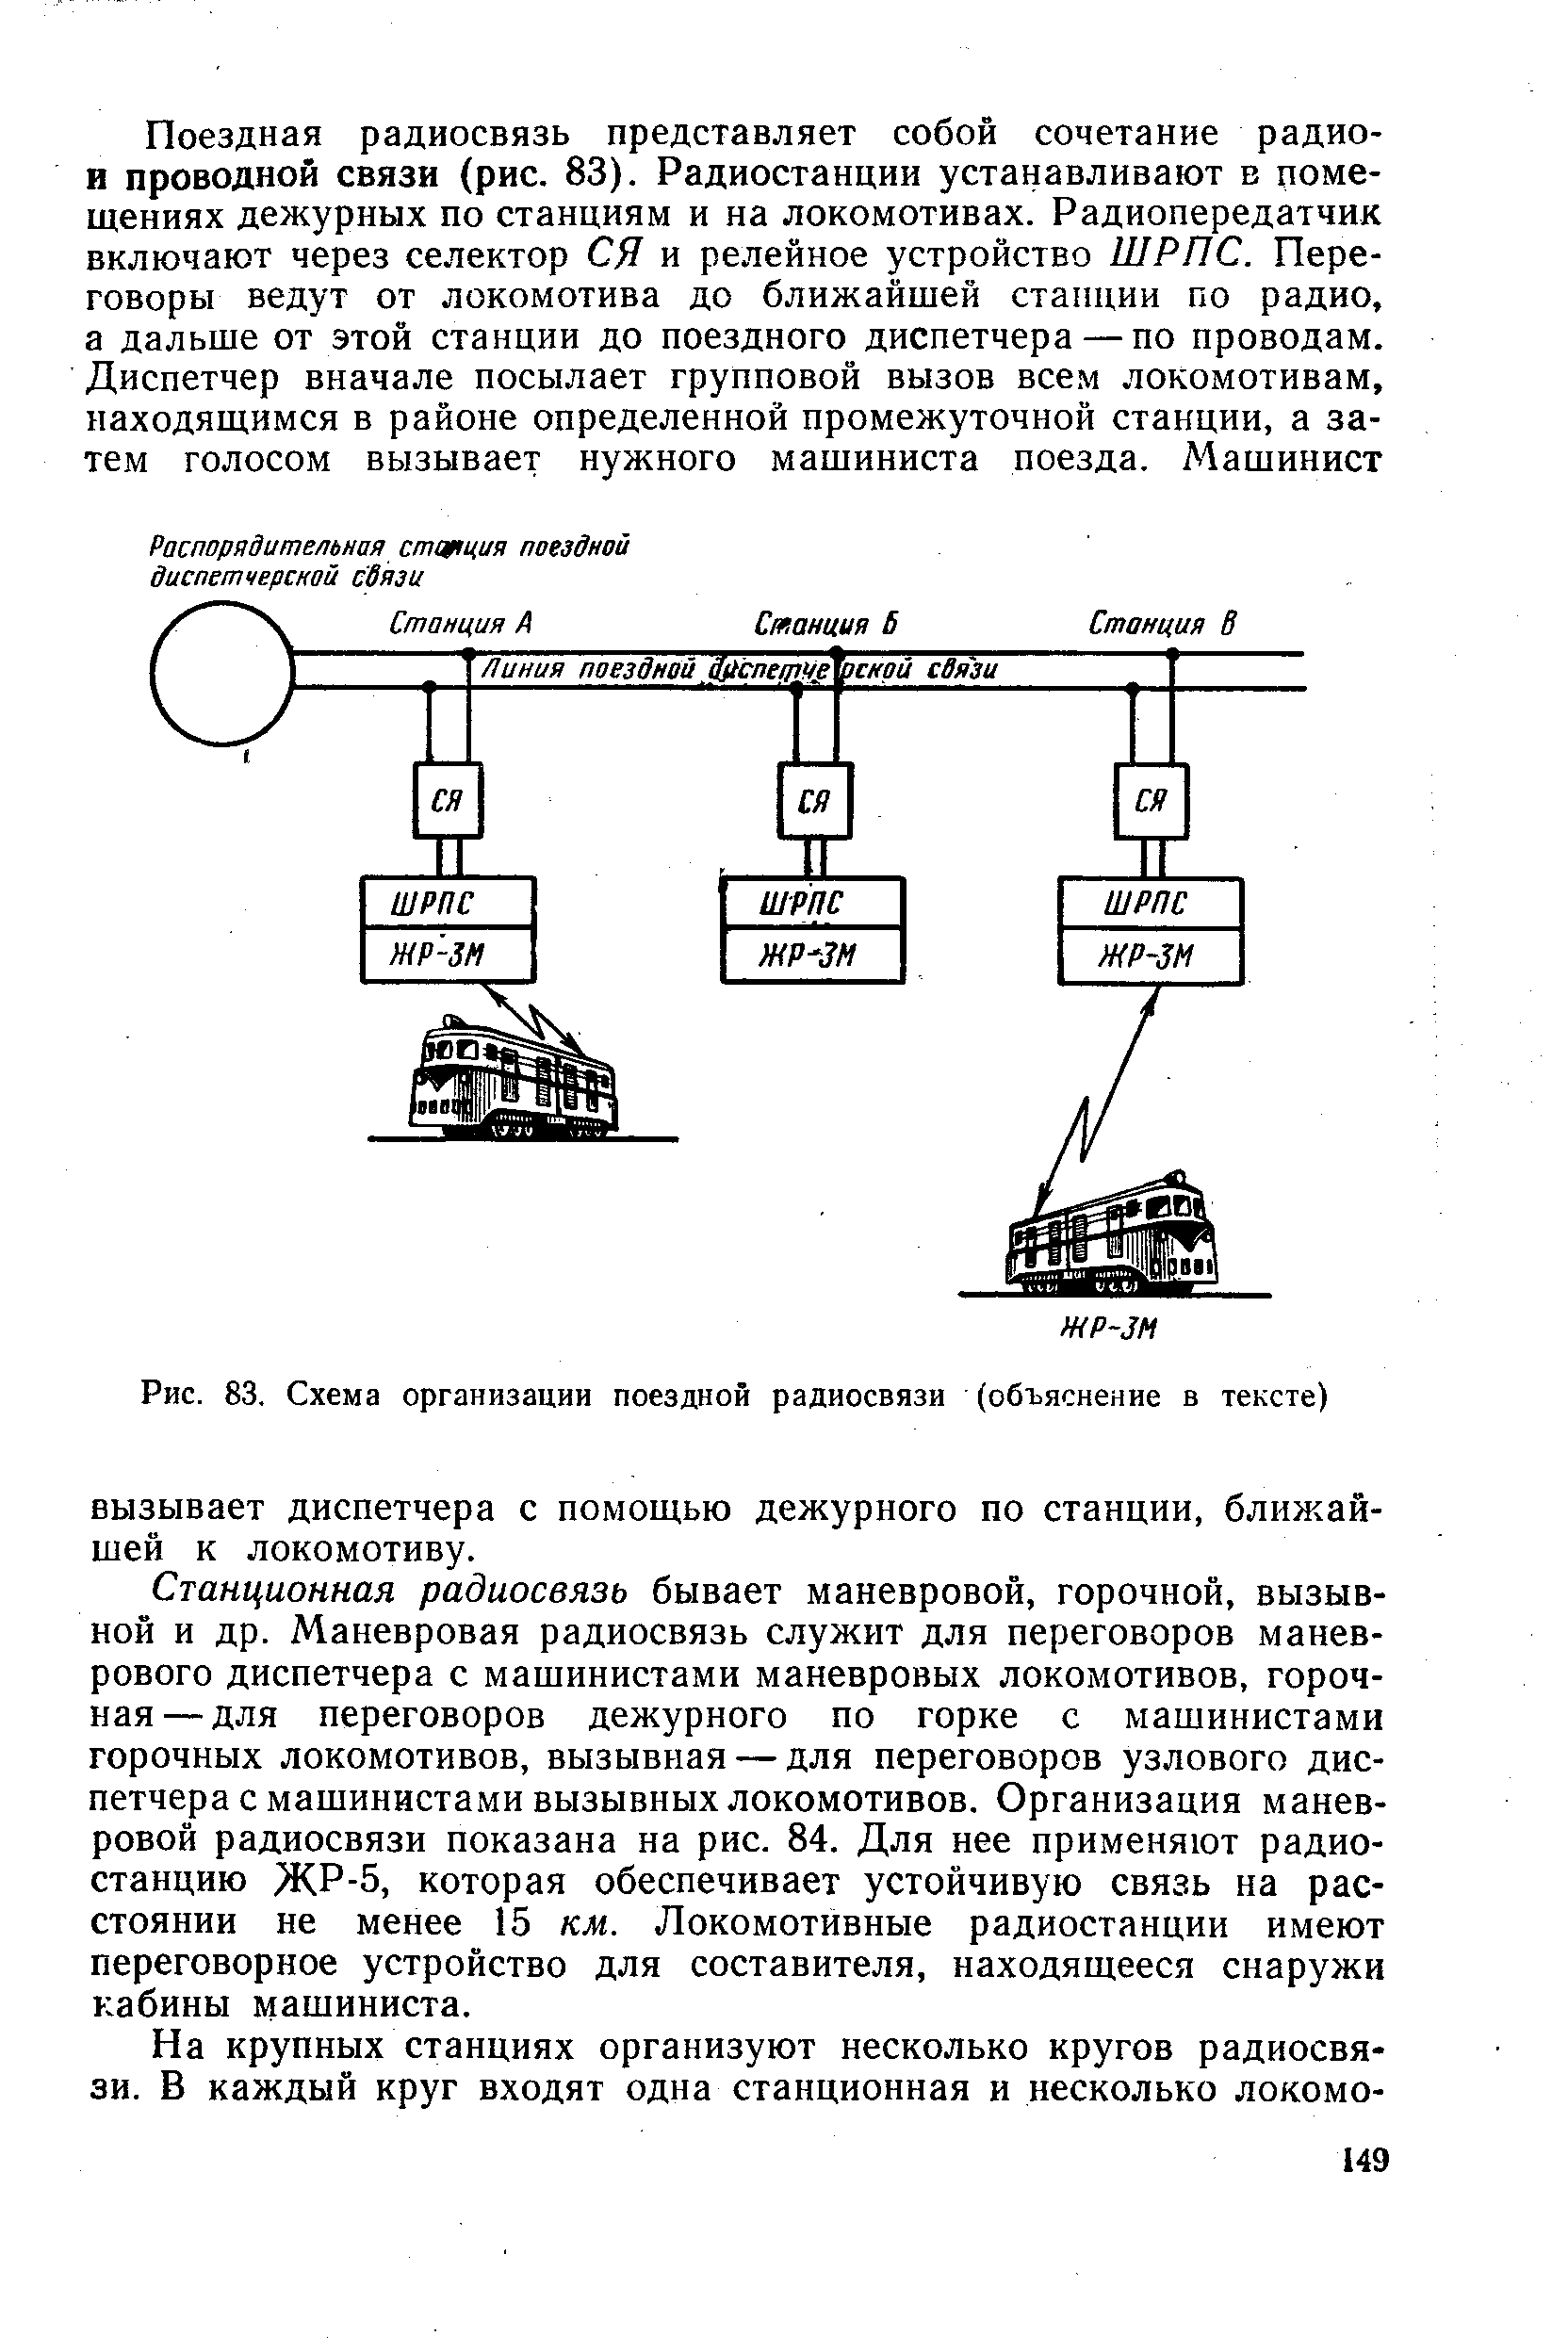 Рис. 83. Схема организации поездной радиосвязи (объяснение в тексте)
